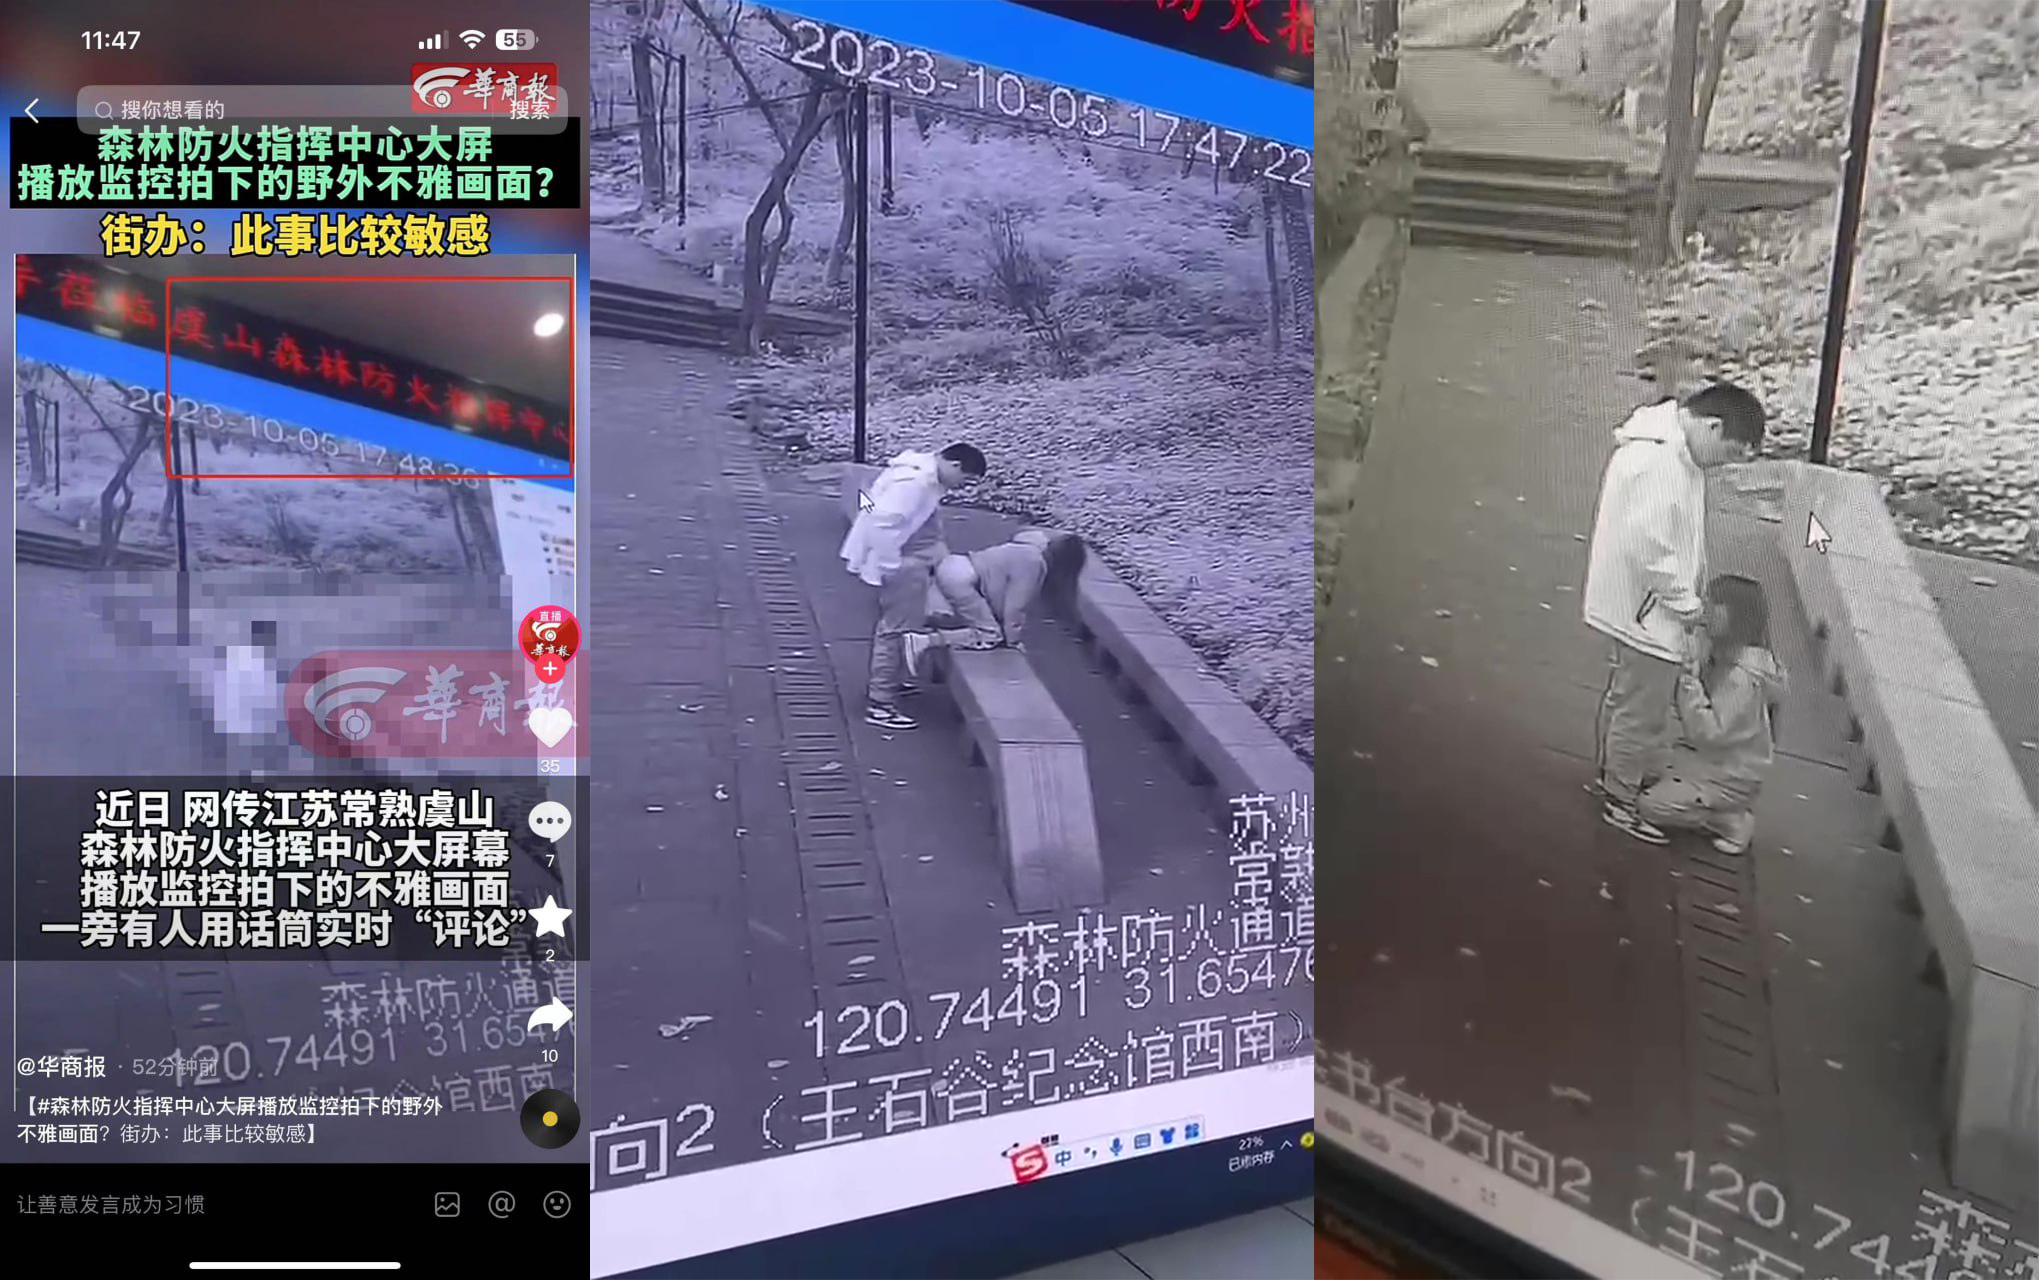 Douyin đã trở nên rất nổi tiếng trong hai ngày qua. Cặp vợ chồng trẻ Wang Shigu ở Changshu, Tô Châu đang diễn ra trận chiến và bị trung tâm cứu hỏa theo dõi. Toàn bộ quá trình được phát sóng trực tiếp và toàn bộ đội cứu hỏa đều theo dõi. thú vị! 5 phút thổi kèn phiên bản đầy đủ